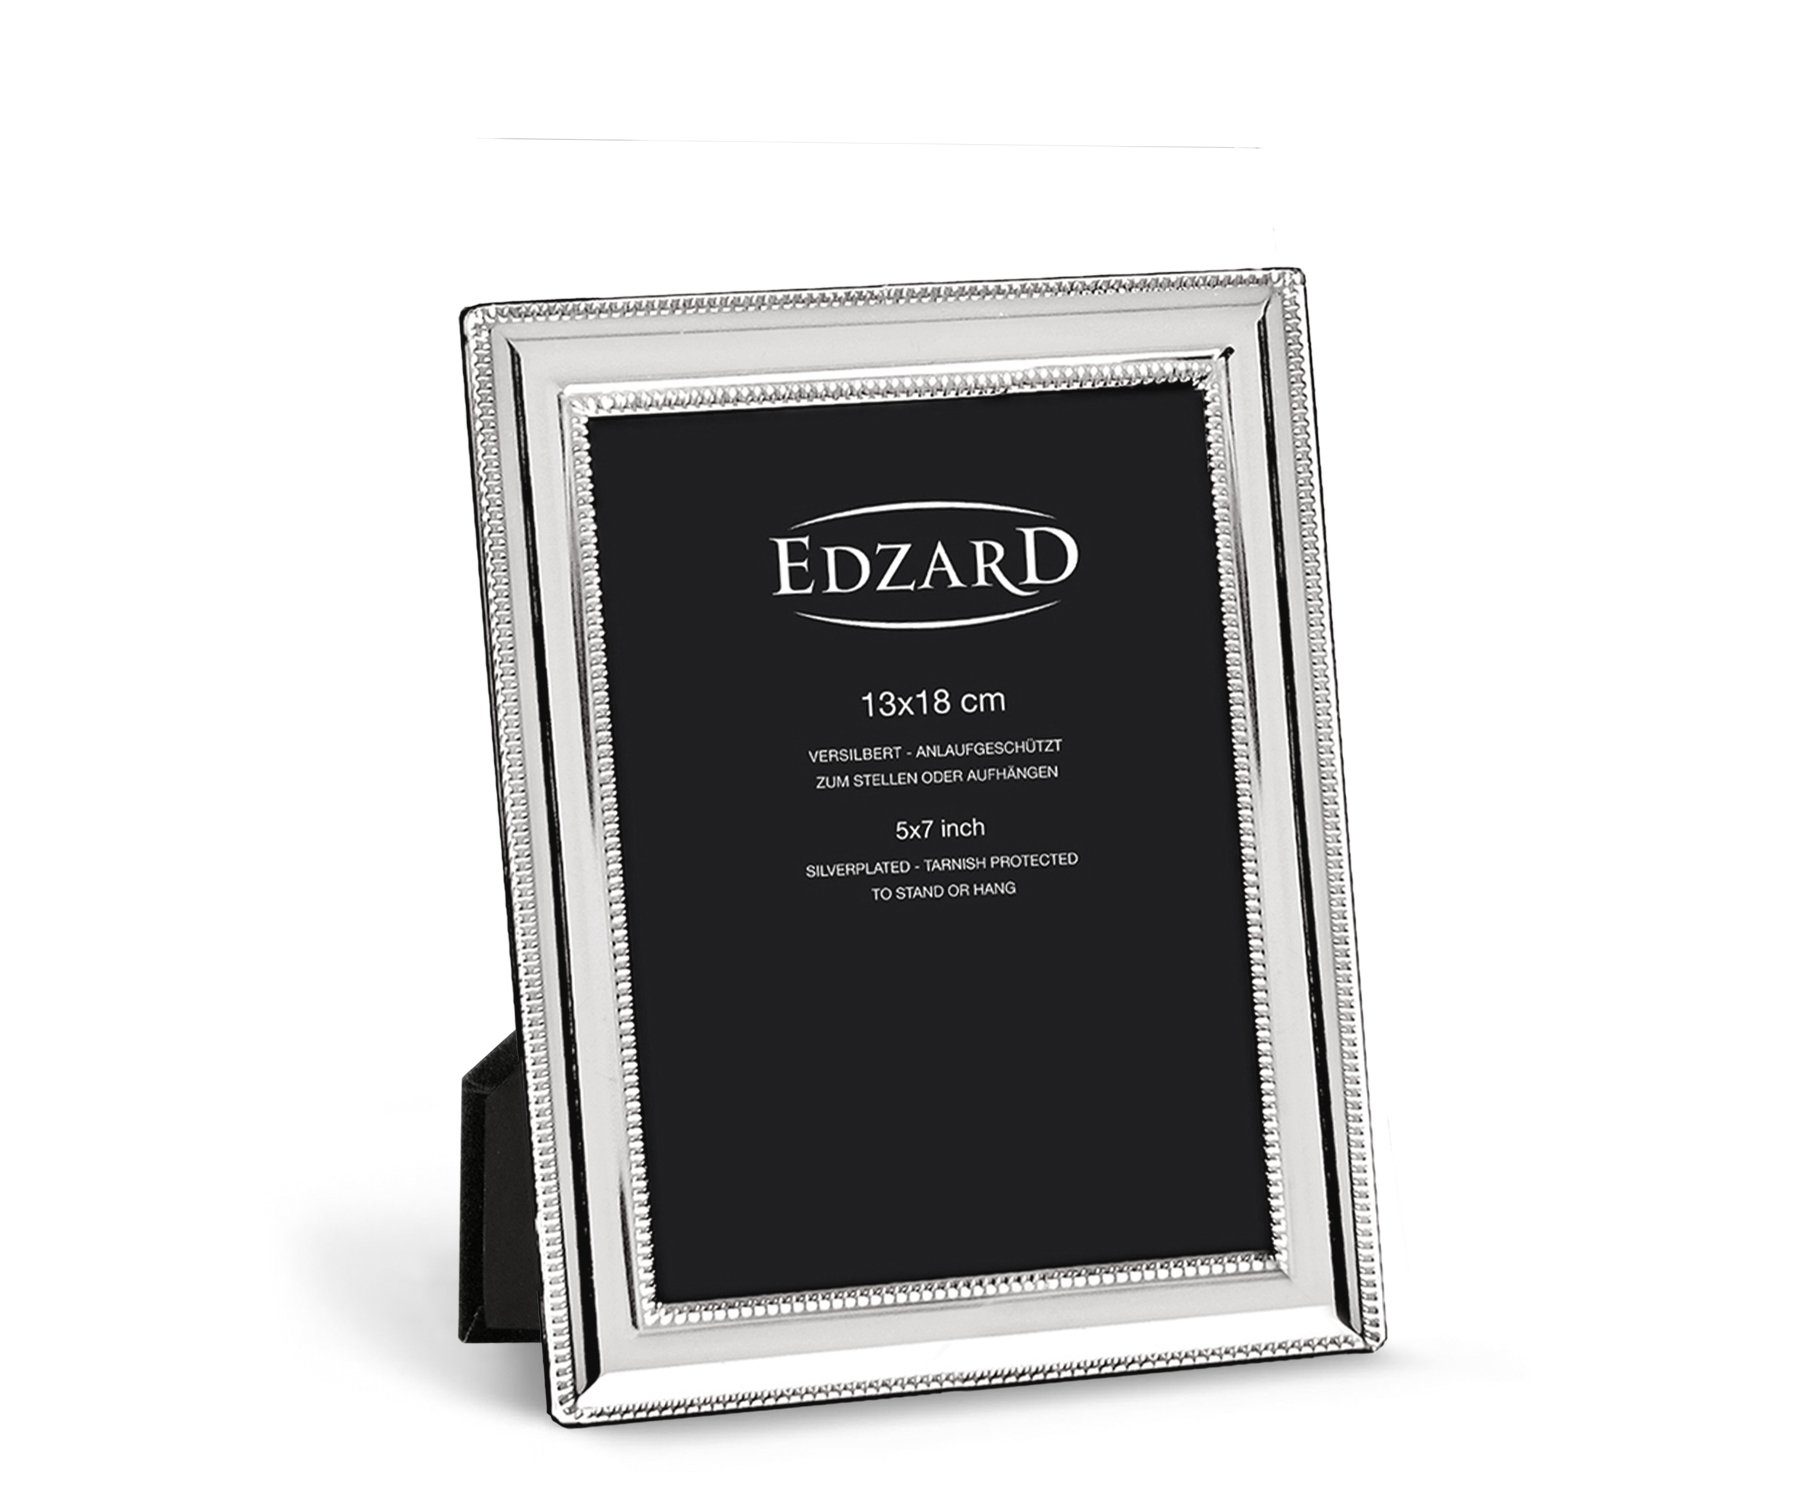 EDZARD Bilderrahmen Matera, und für versilbert anlaufgeschützt, Foto 13x18 edel cm